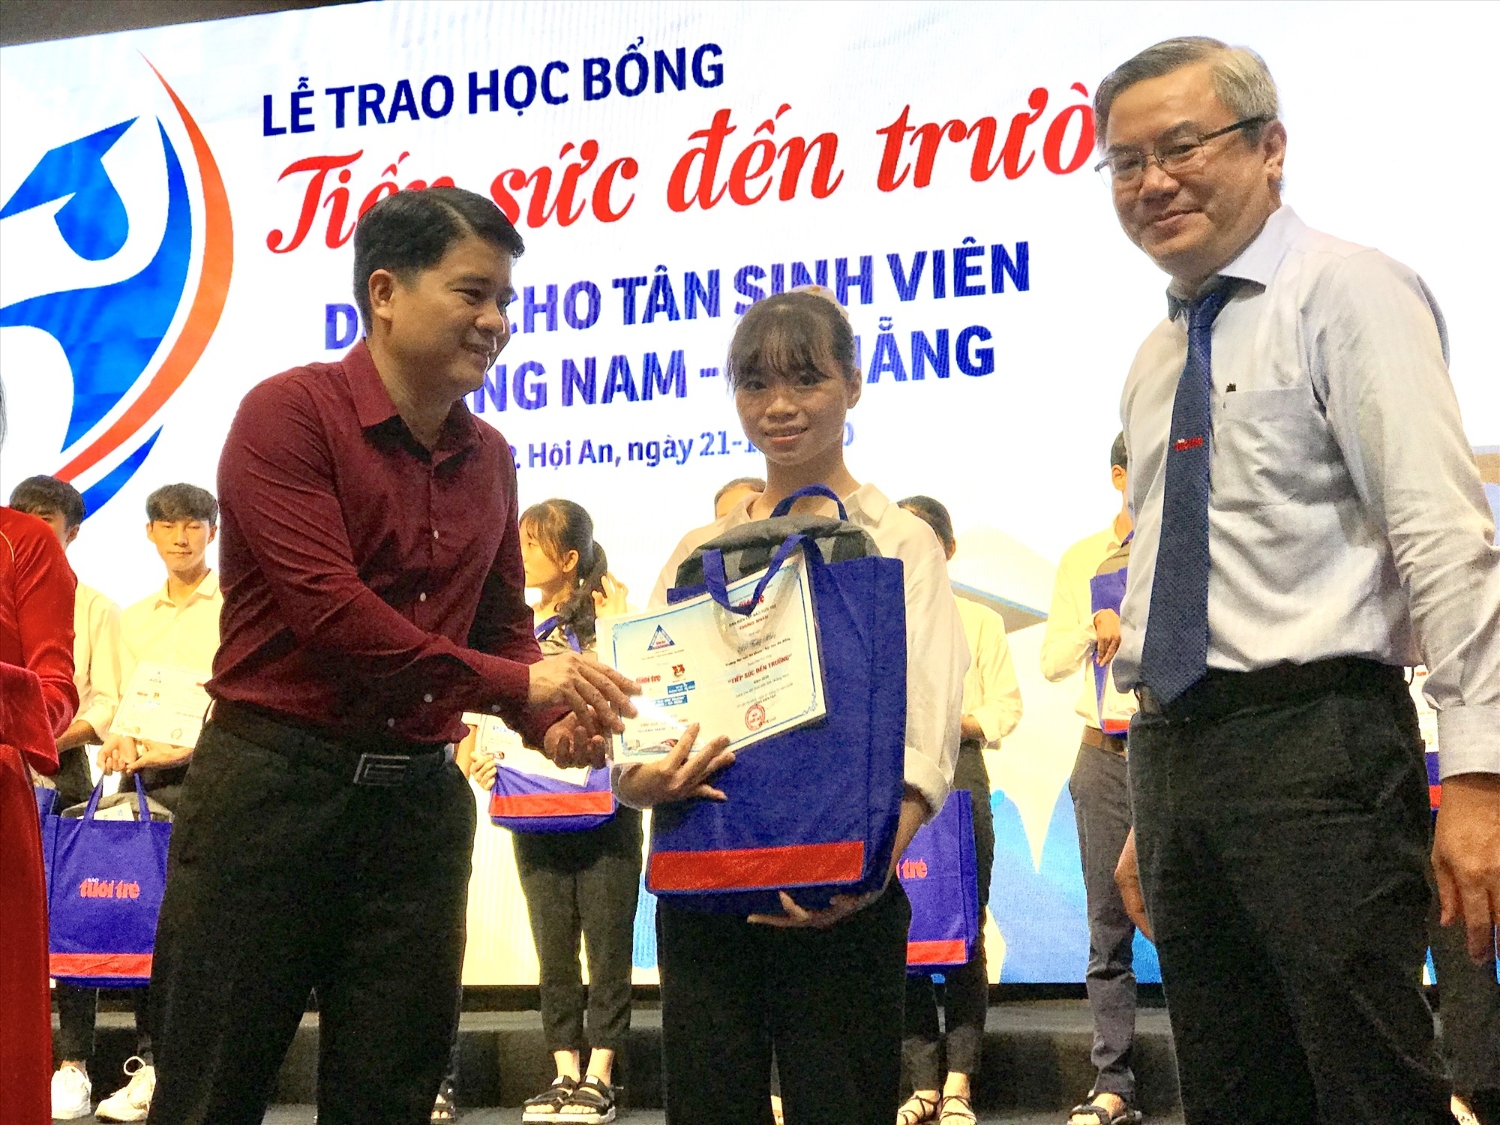 Phó Chủ tịch UBND tỉnh Trần Văn Tân trao học bổng cho tân sinh viên. Ảnh: Q.T